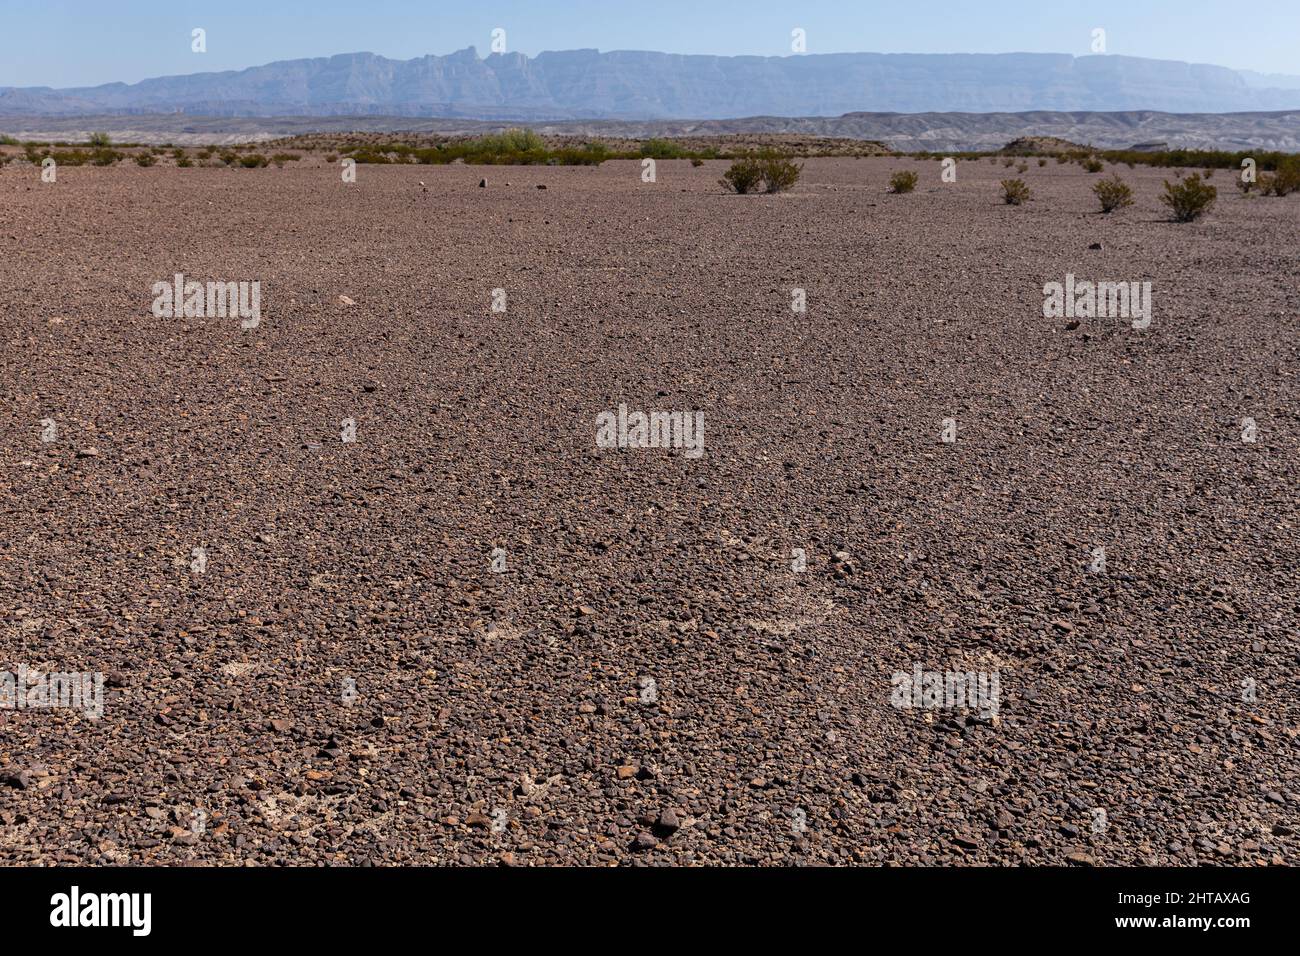 Pavimento del desierto en el Desierto Chihuahua de Texas. Foto de stock